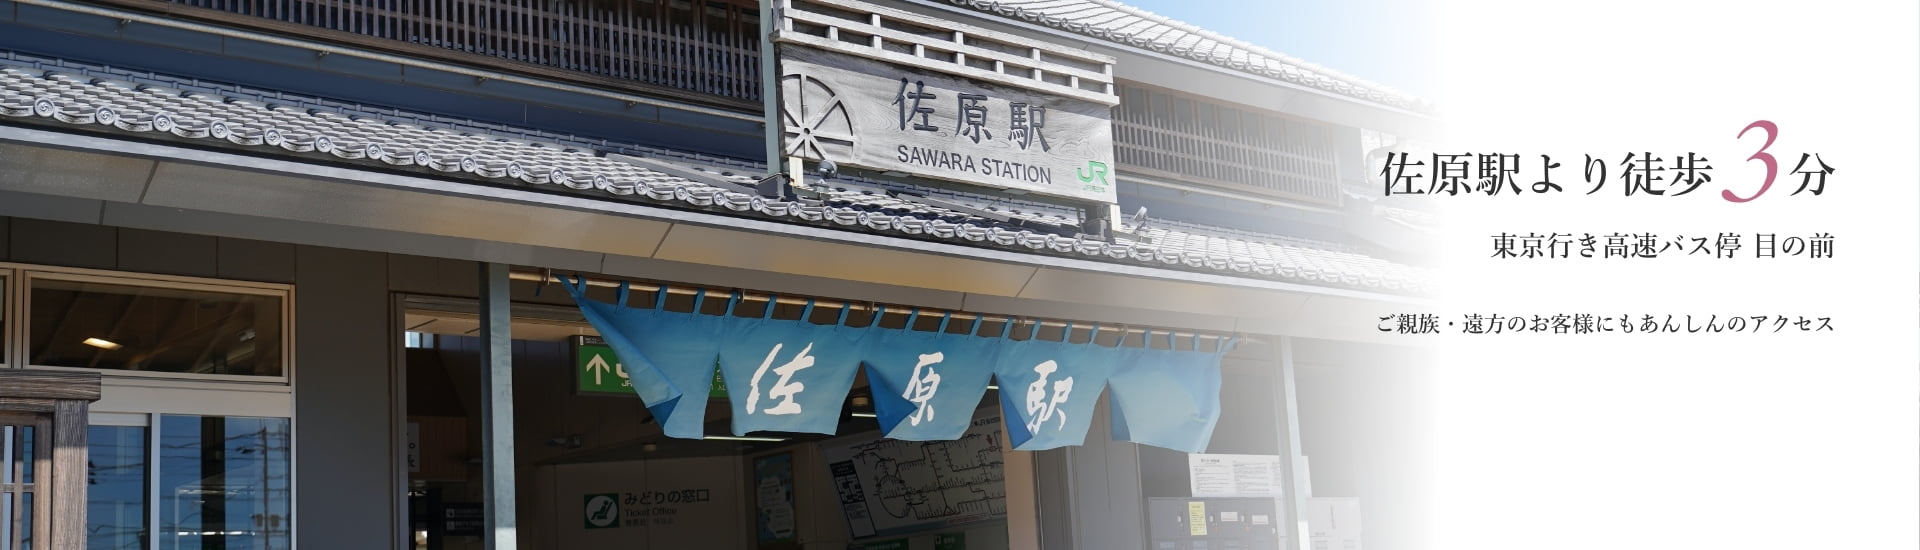 佐原駅より徒歩3分 東京行き高速バス停目の前 ご親族・遠方のお客様にもあんしんのアクセス